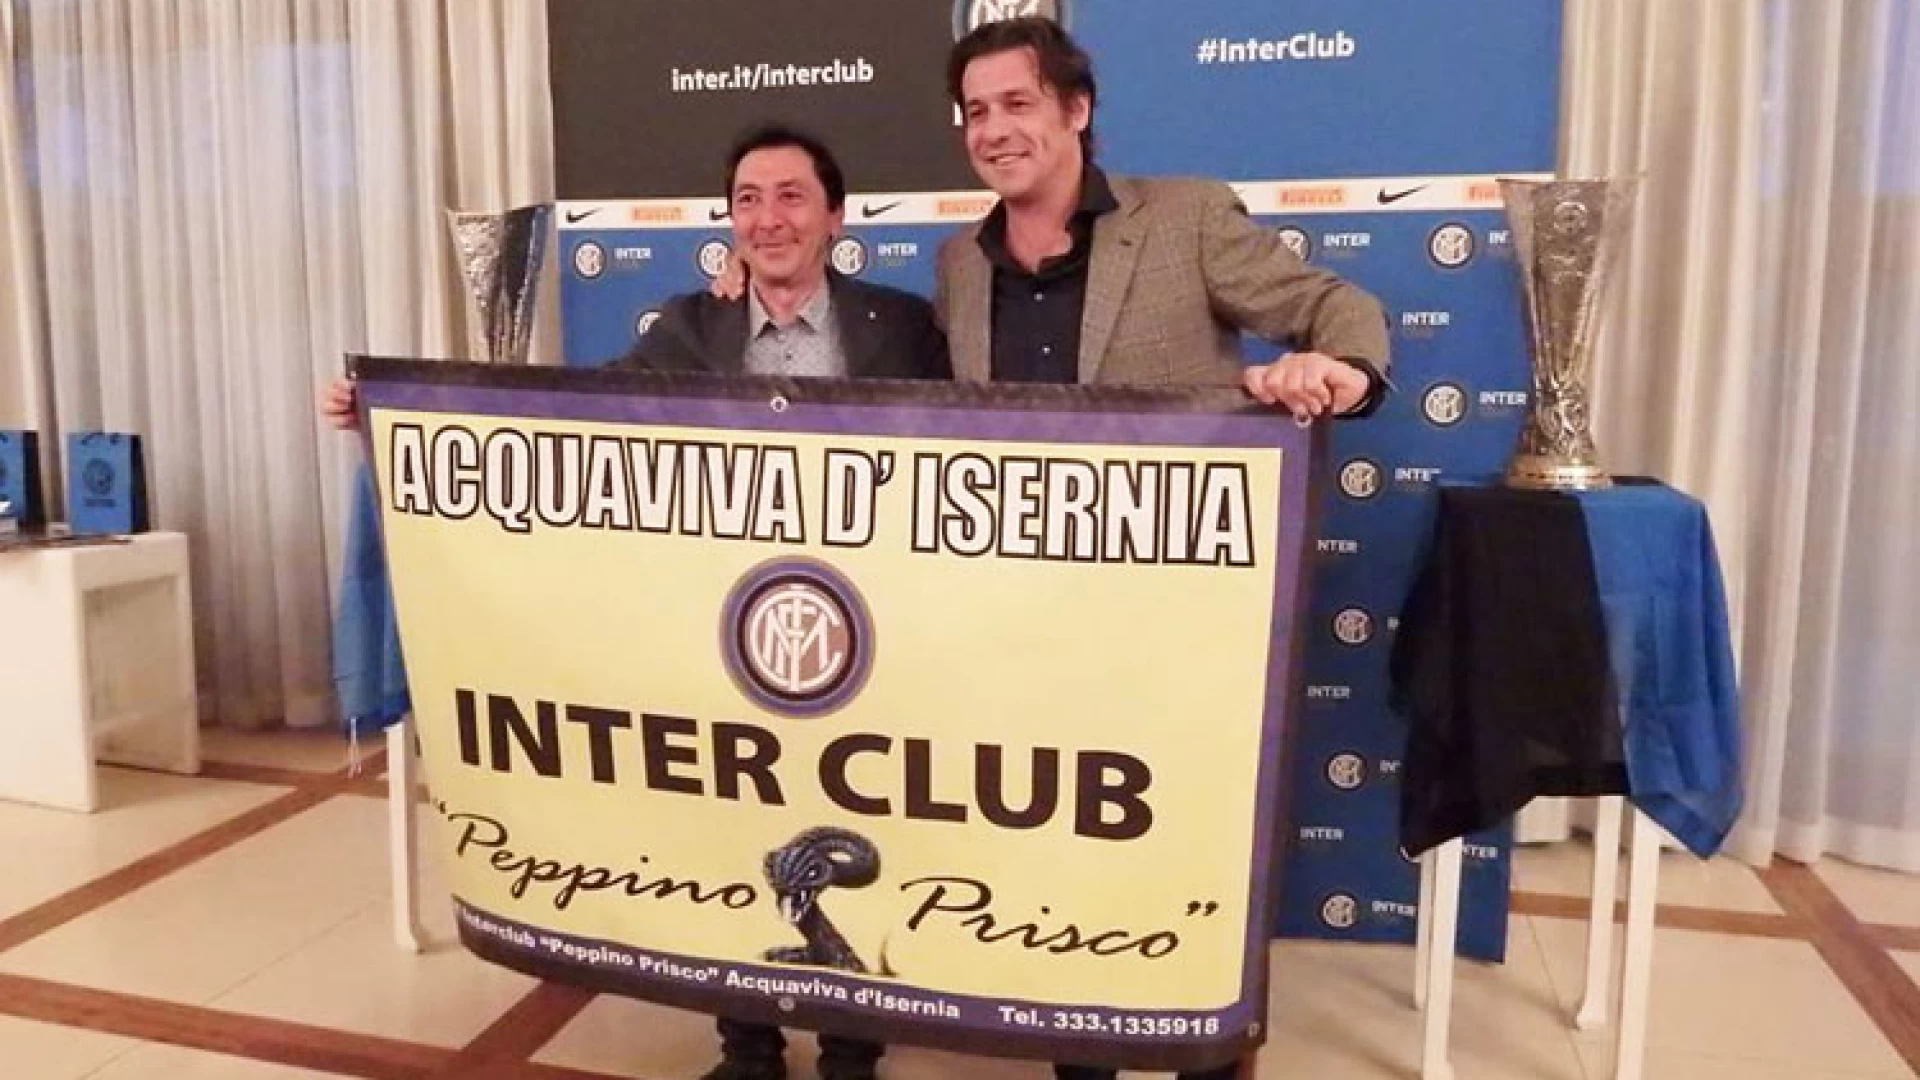 Termoli: Nicola Berti, grande campione dell’Inter, premia il club di Acquaviva d’Isernia. Ieri l’incontro con il presidente Giancarlo Rossi.